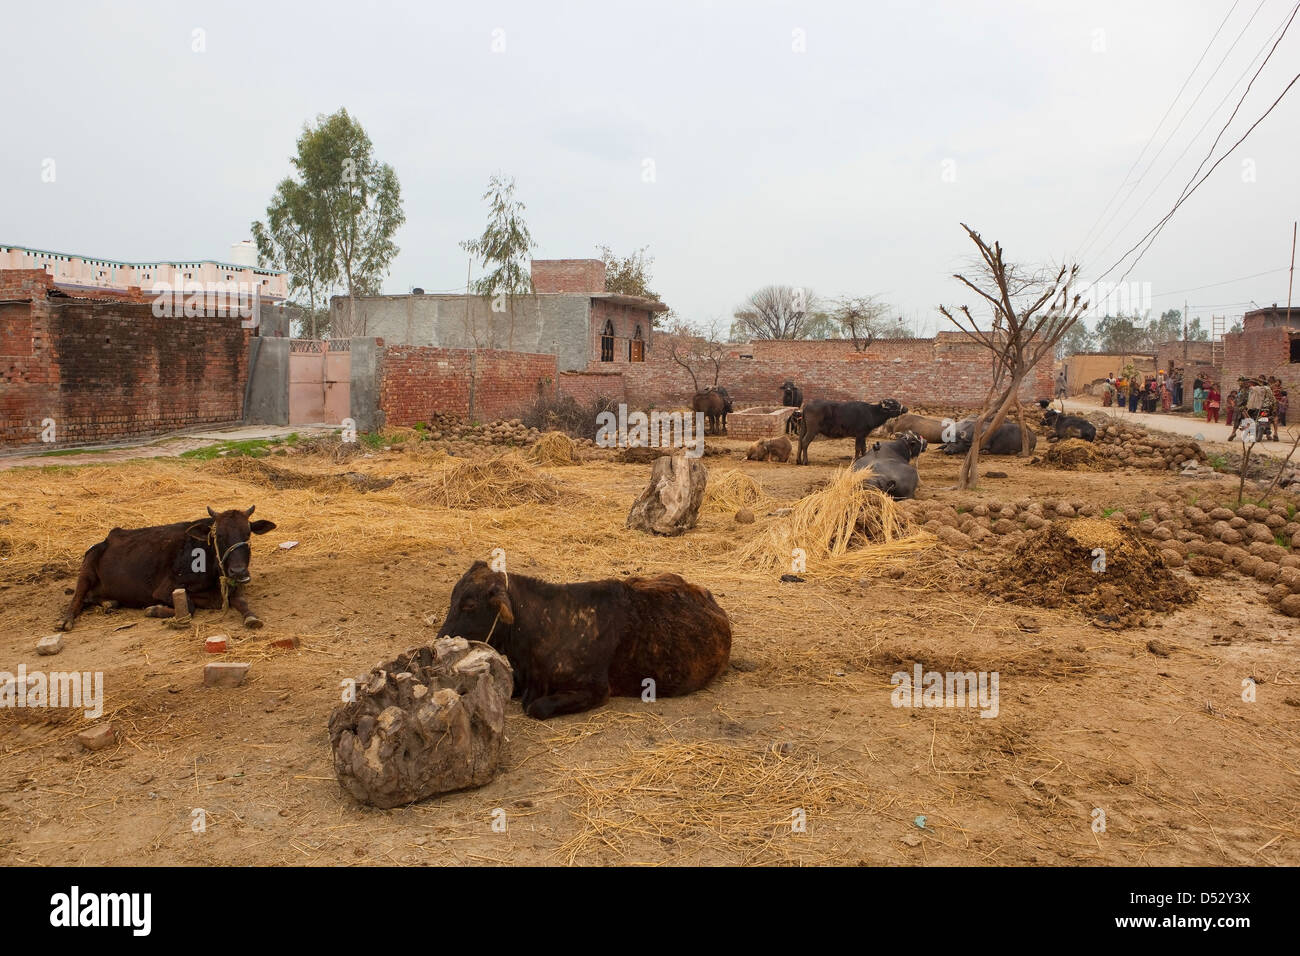 Una tradicional granja en Punjab rural con ganado descansando, edificios agrícolas y árboles, y un grupo de aldeanos en la distancia. Foto de stock